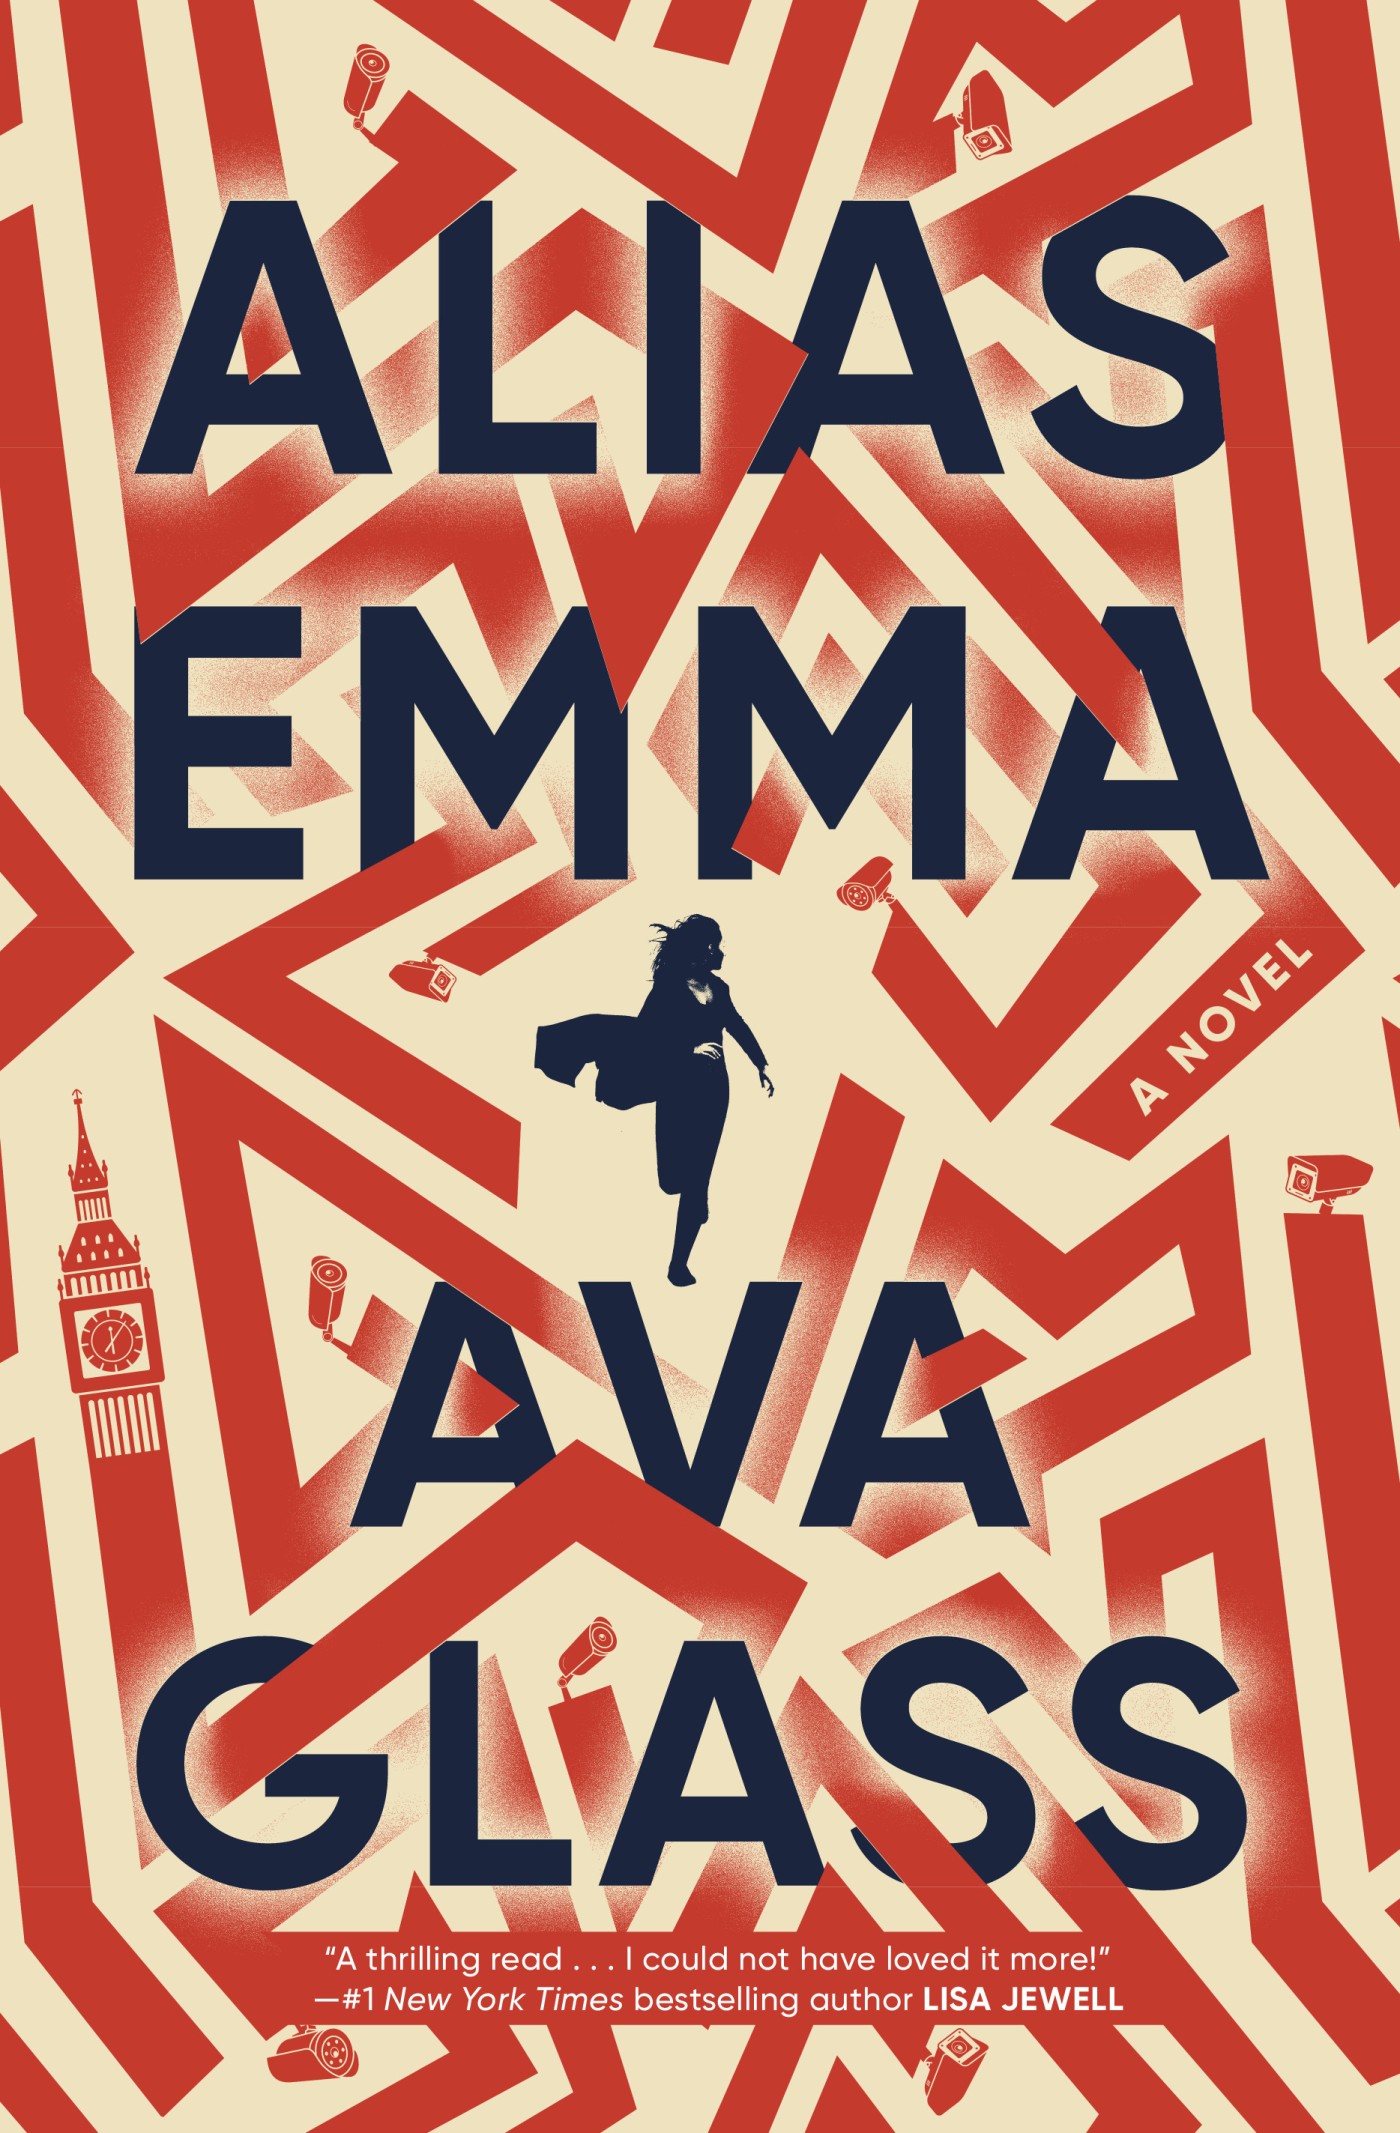 Alias Emma by Ava Glass